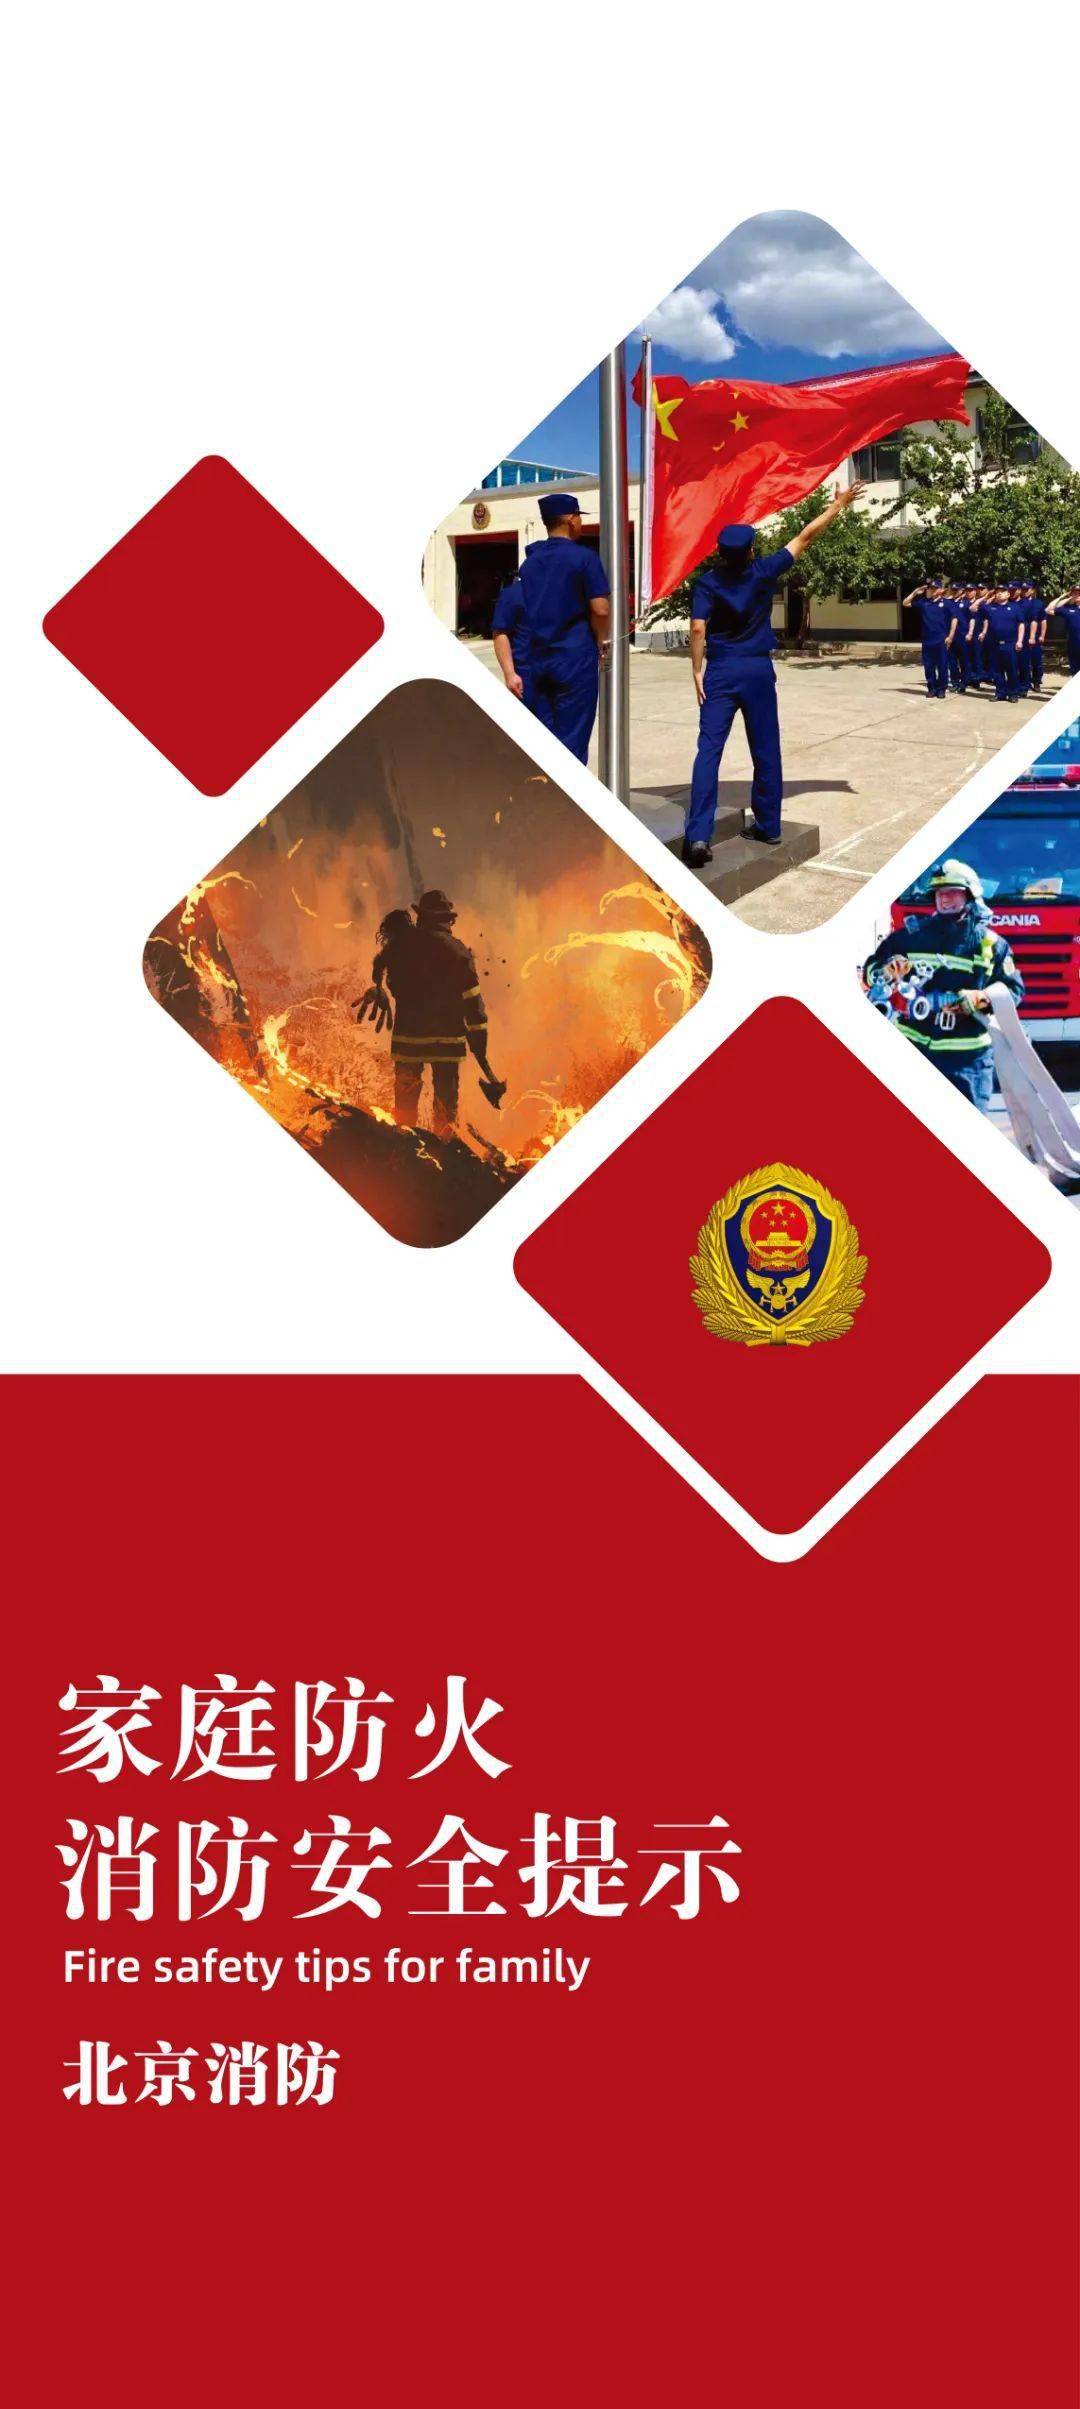 北京消防紧紧围绕 家庭防火安全提示 精心设计制作了宣传海报 希望对